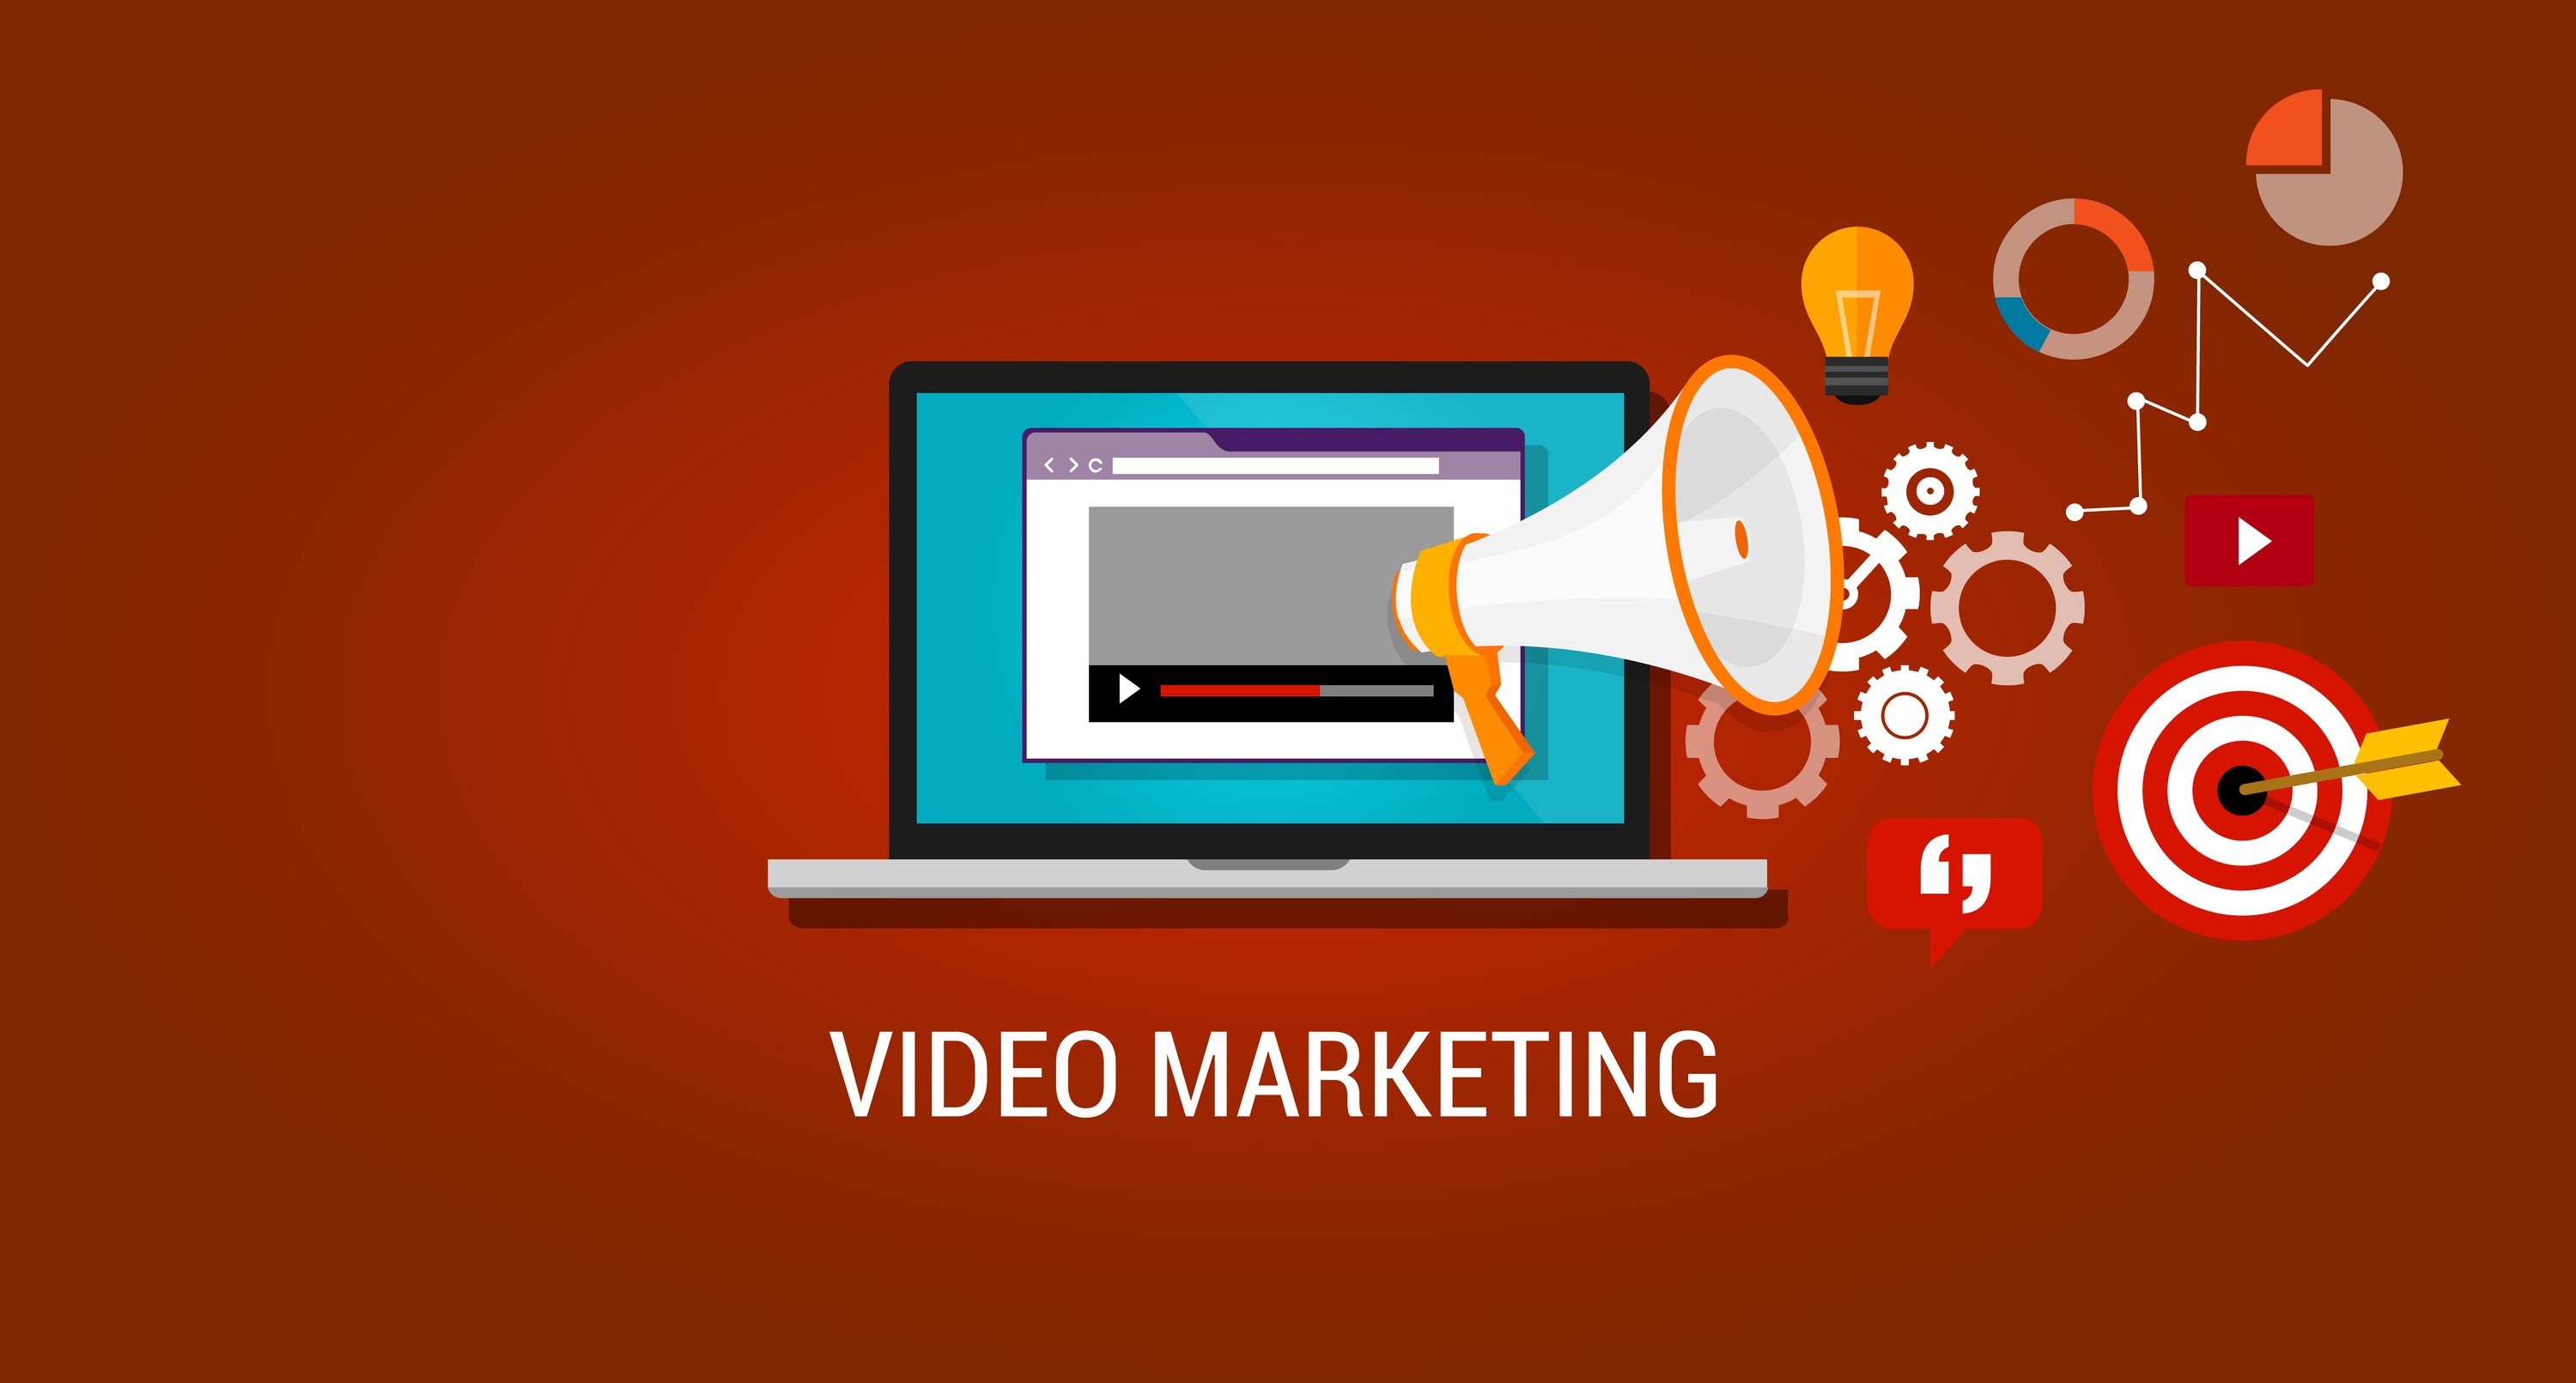 ویدئو مارکتینگ، بازاریابی ویدئویی در یک نگاه